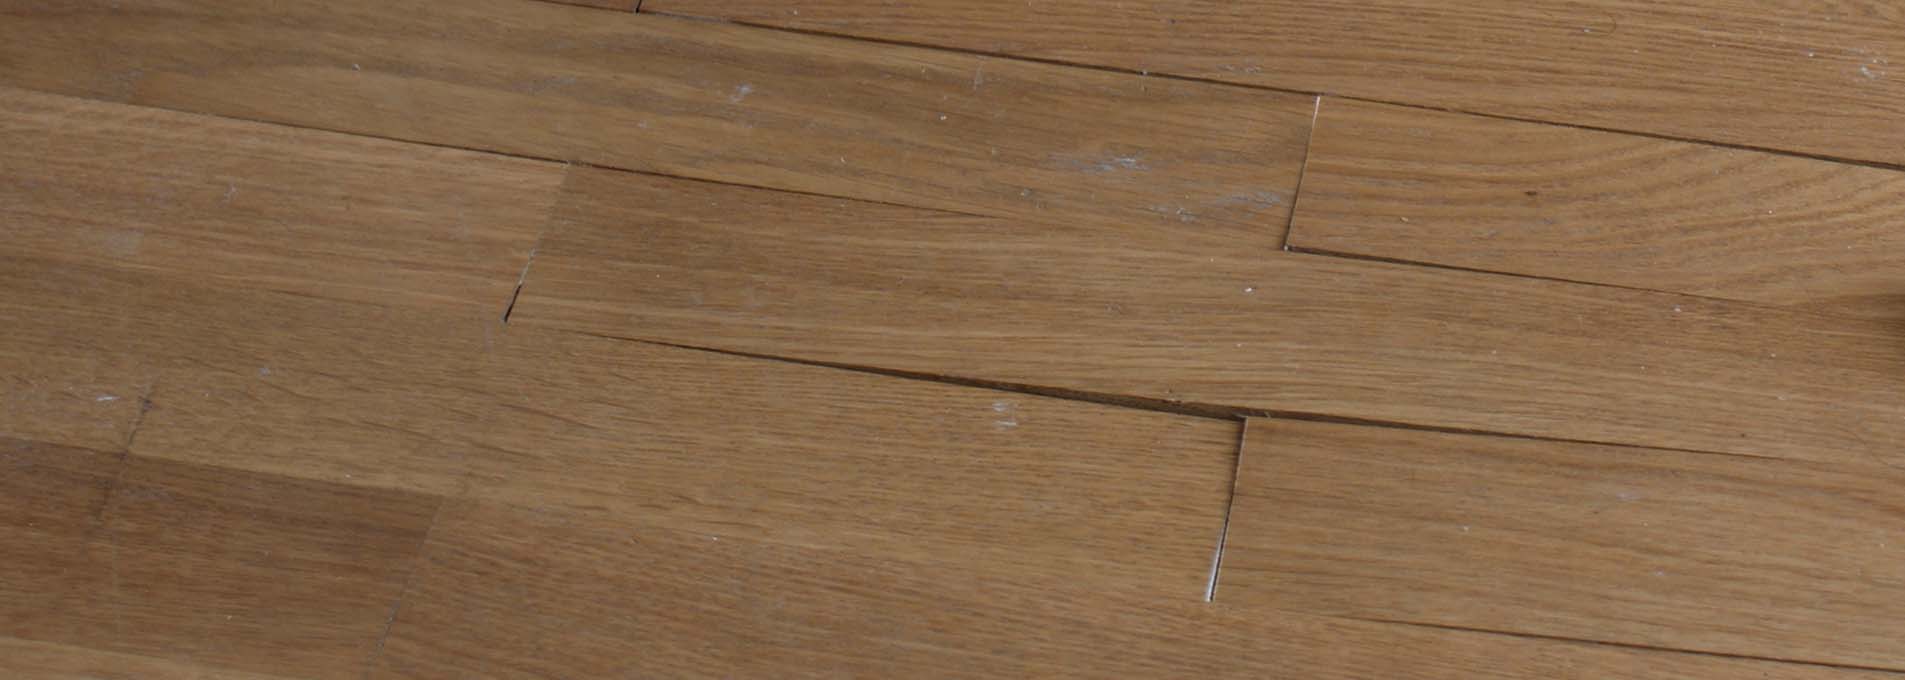 warped wooden flooring header